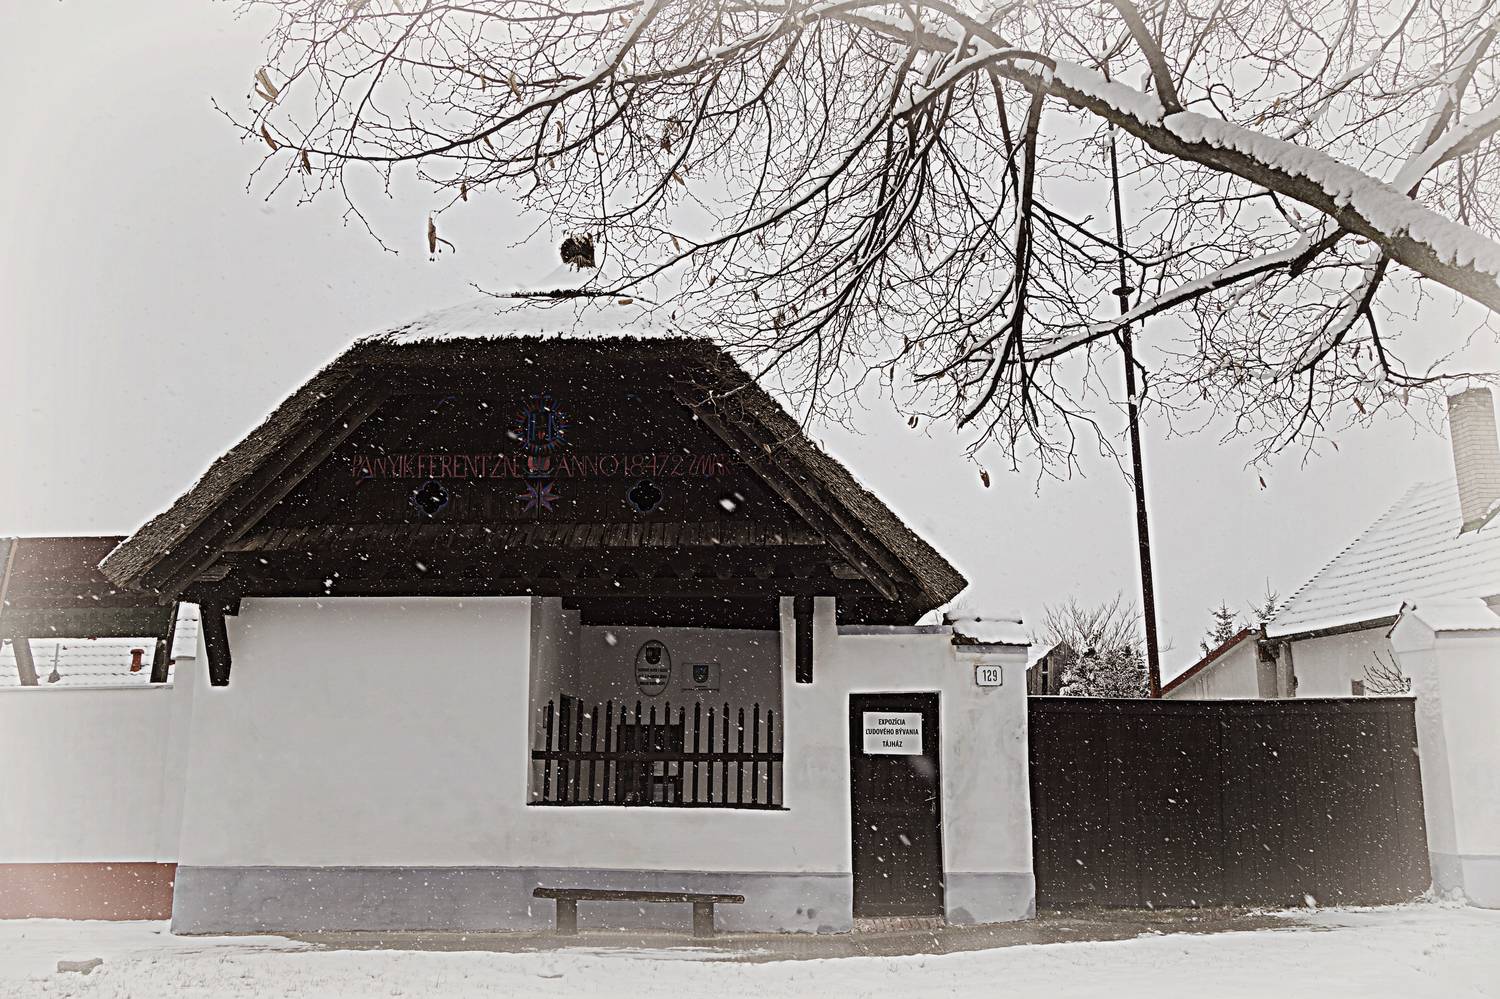 Dom ľudového bývania Matúškovo